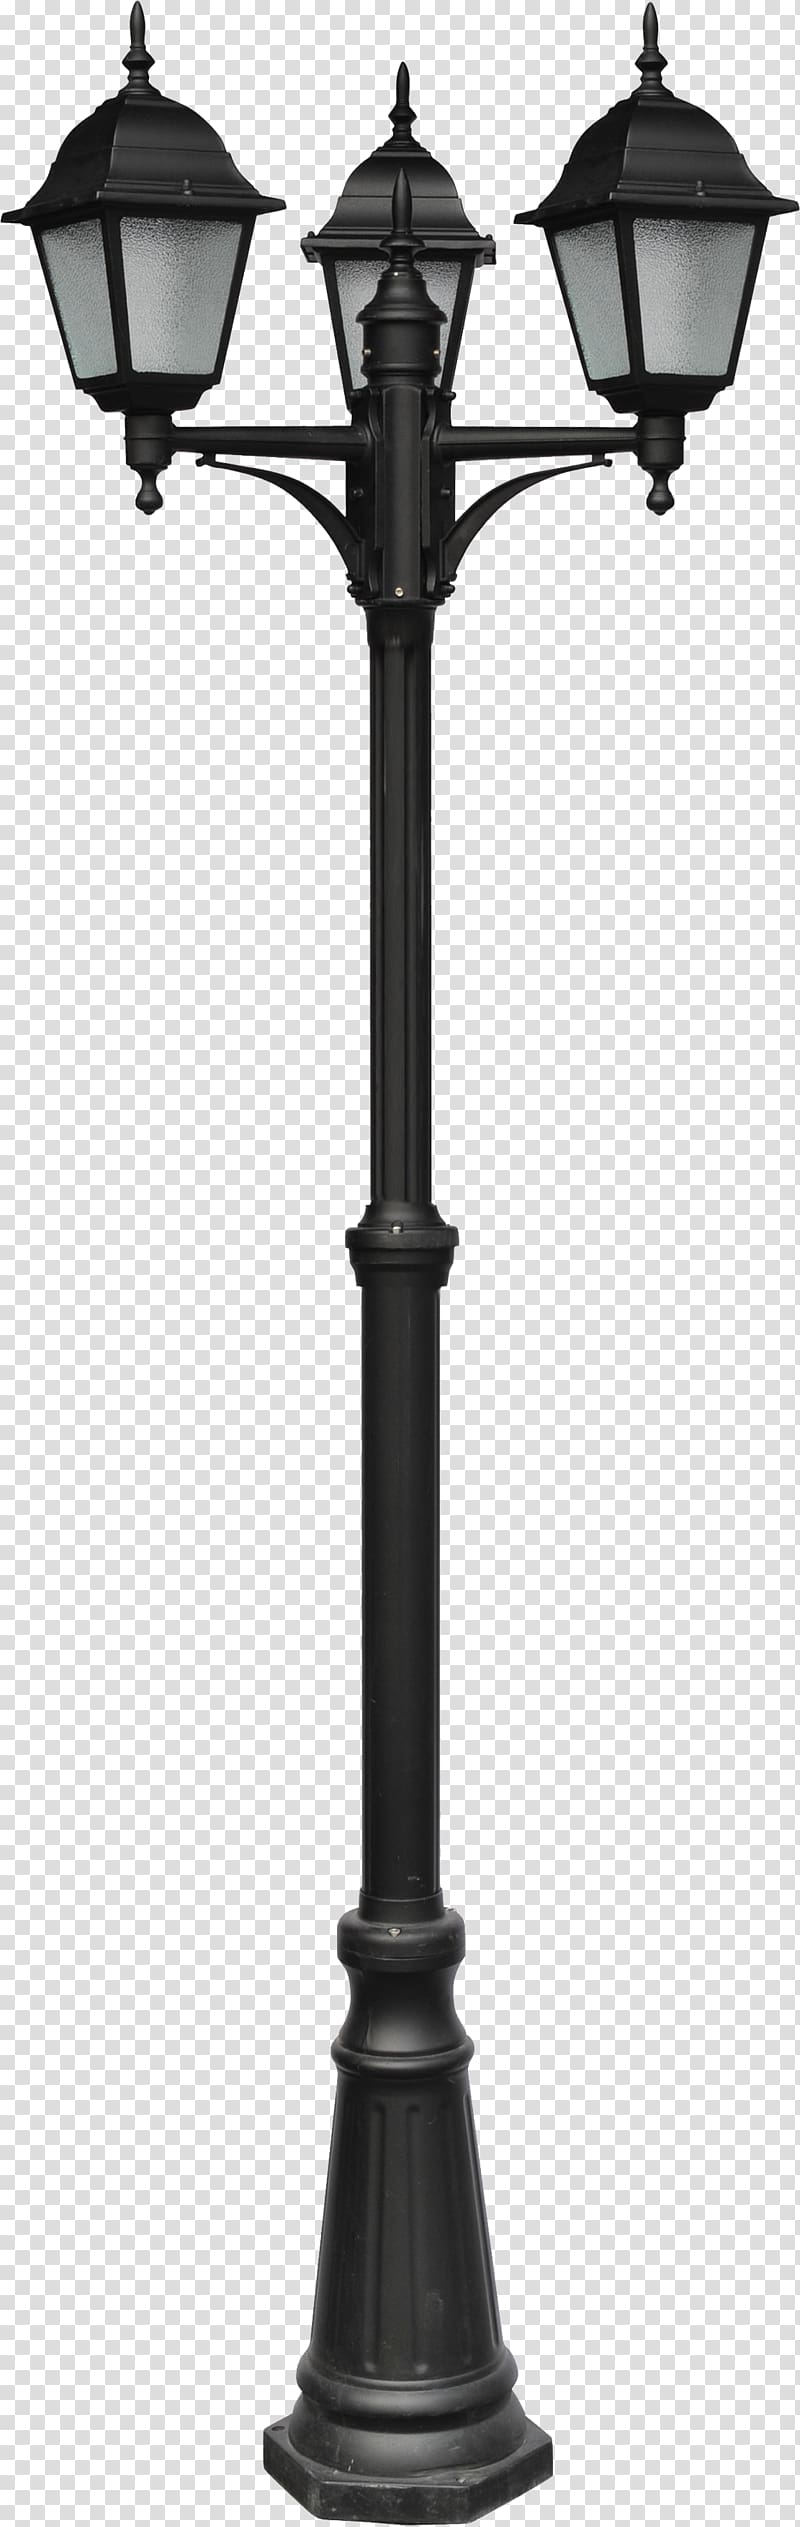 black cast iron 3-light lamp post, Street light Light fixture Lighting, Street light transparent background PNG clipart